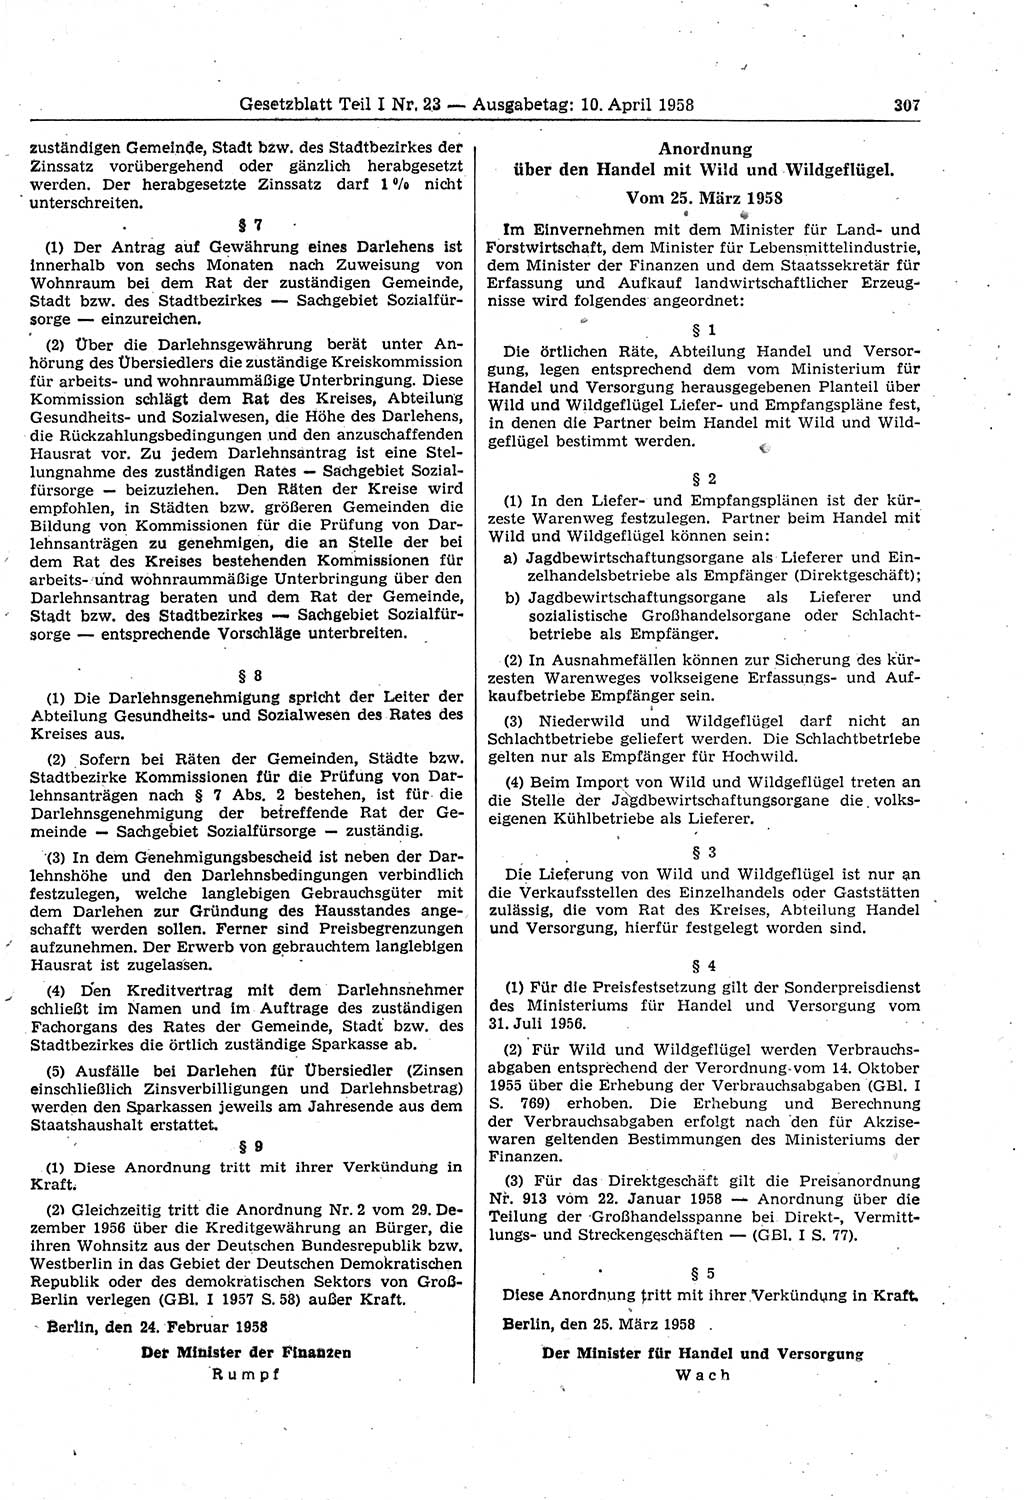 Gesetzblatt (GBl.) der Deutschen Demokratischen Republik (DDR) Teil Ⅰ 1958, Seite 307 (GBl. DDR Ⅰ 1958, S. 307)